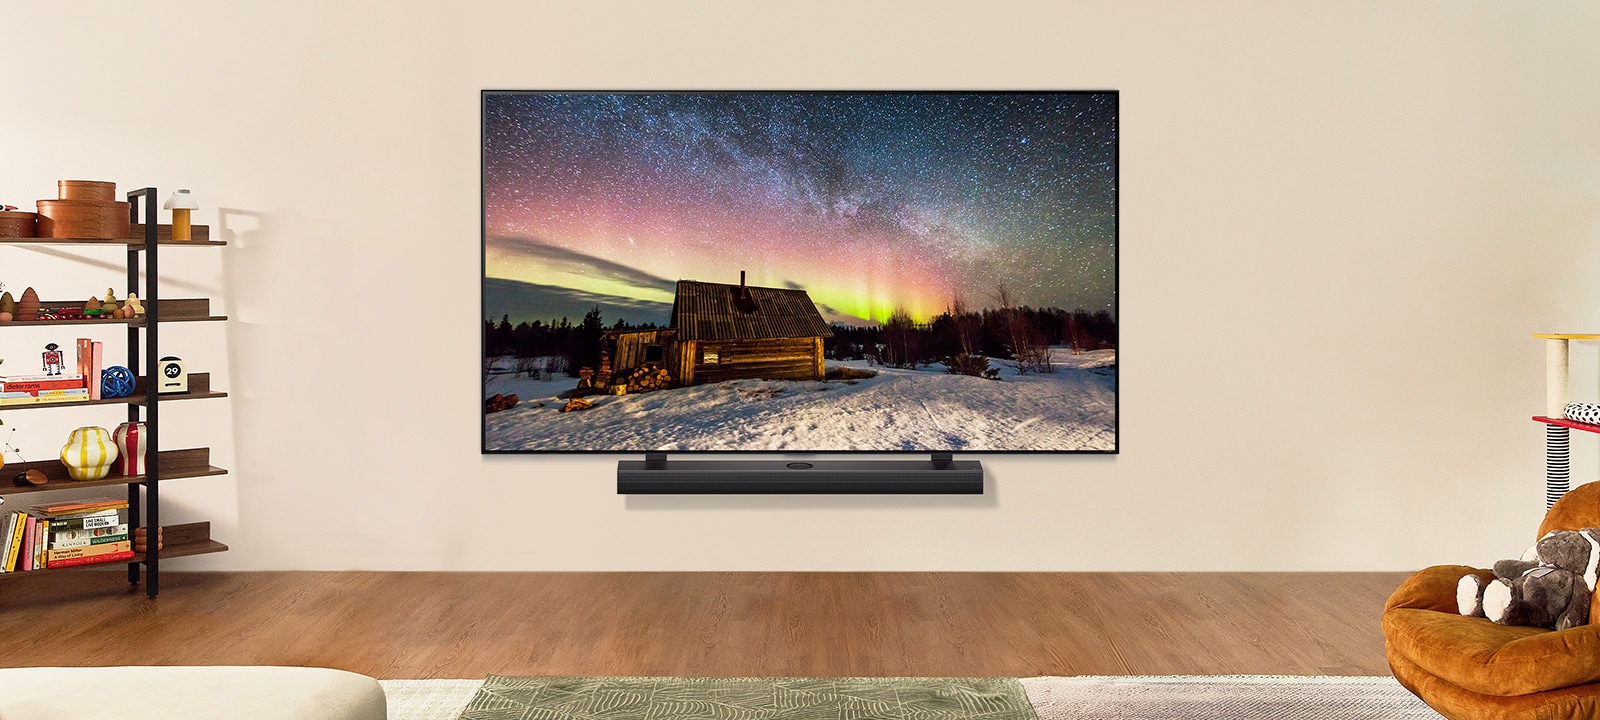 LG TV y una barra se sonido LG en un espacio moderno durante el día. La imagen de la aurora boreal se muestra con los niveles de brillo ideales.